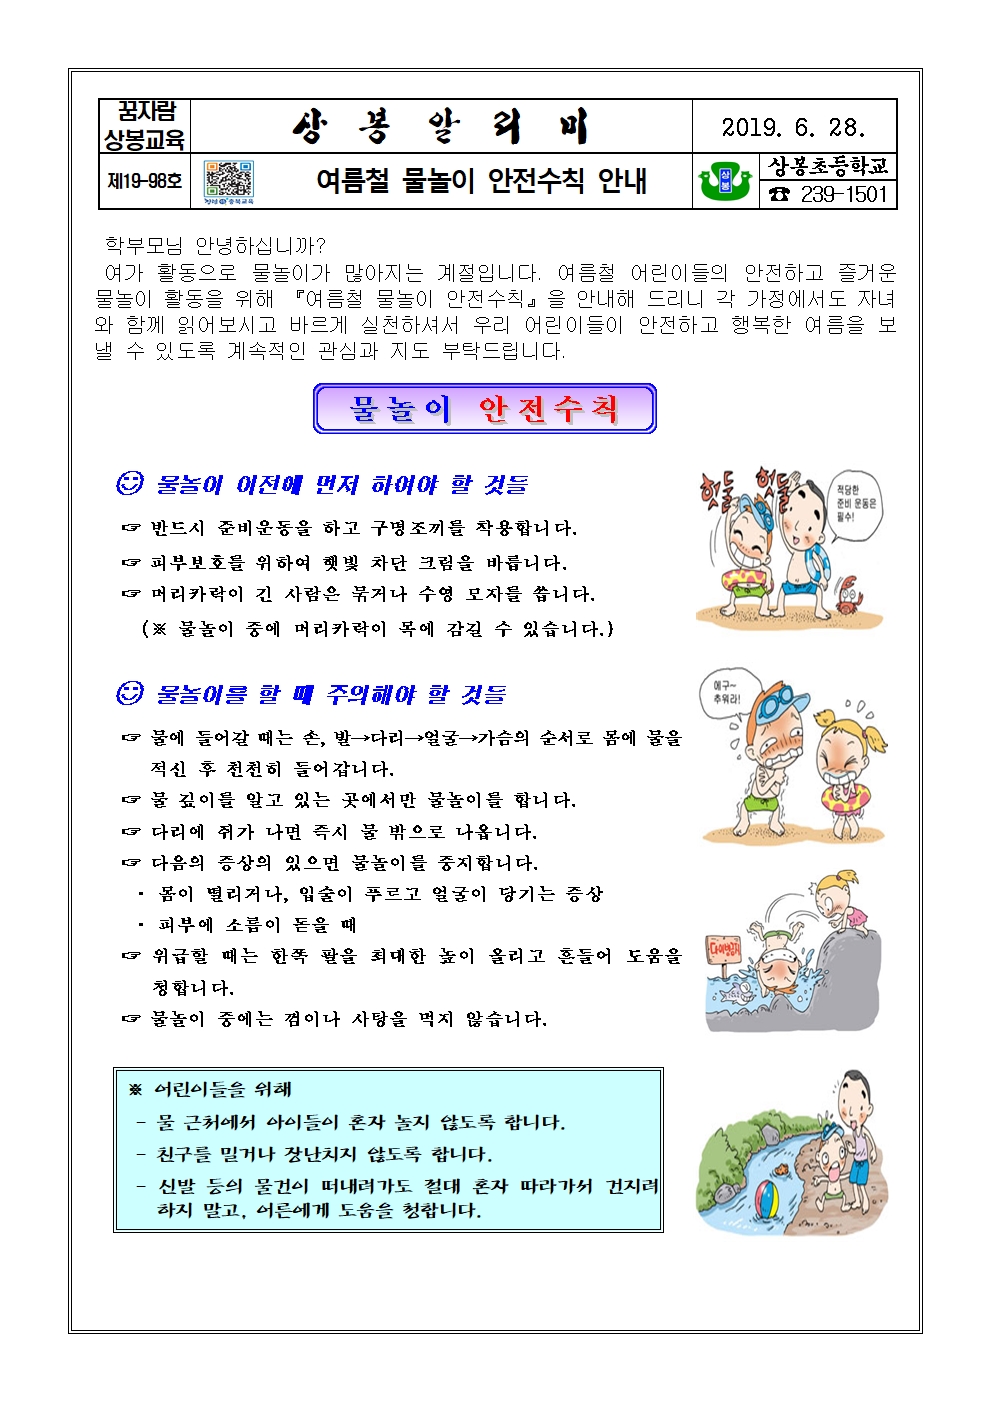 2019. 물놀이 안전사고 예방_가정통신문001